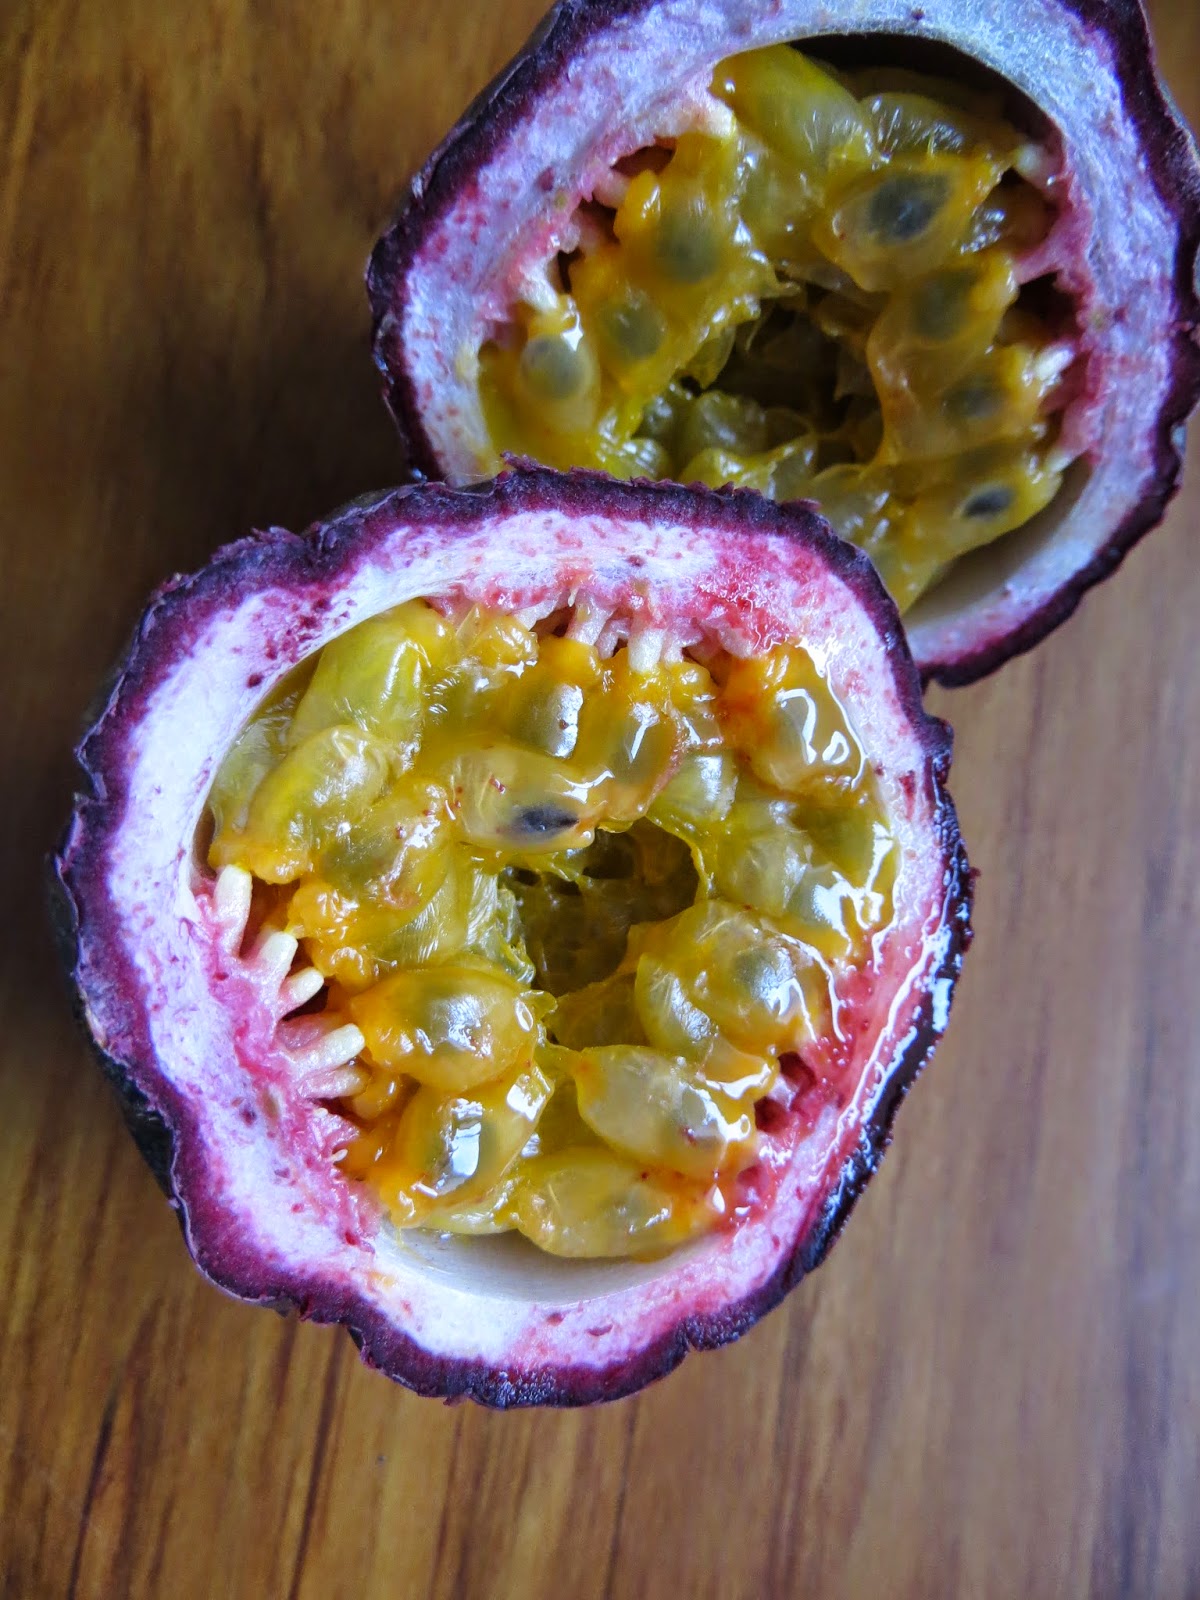 Cut ripe passionfruit